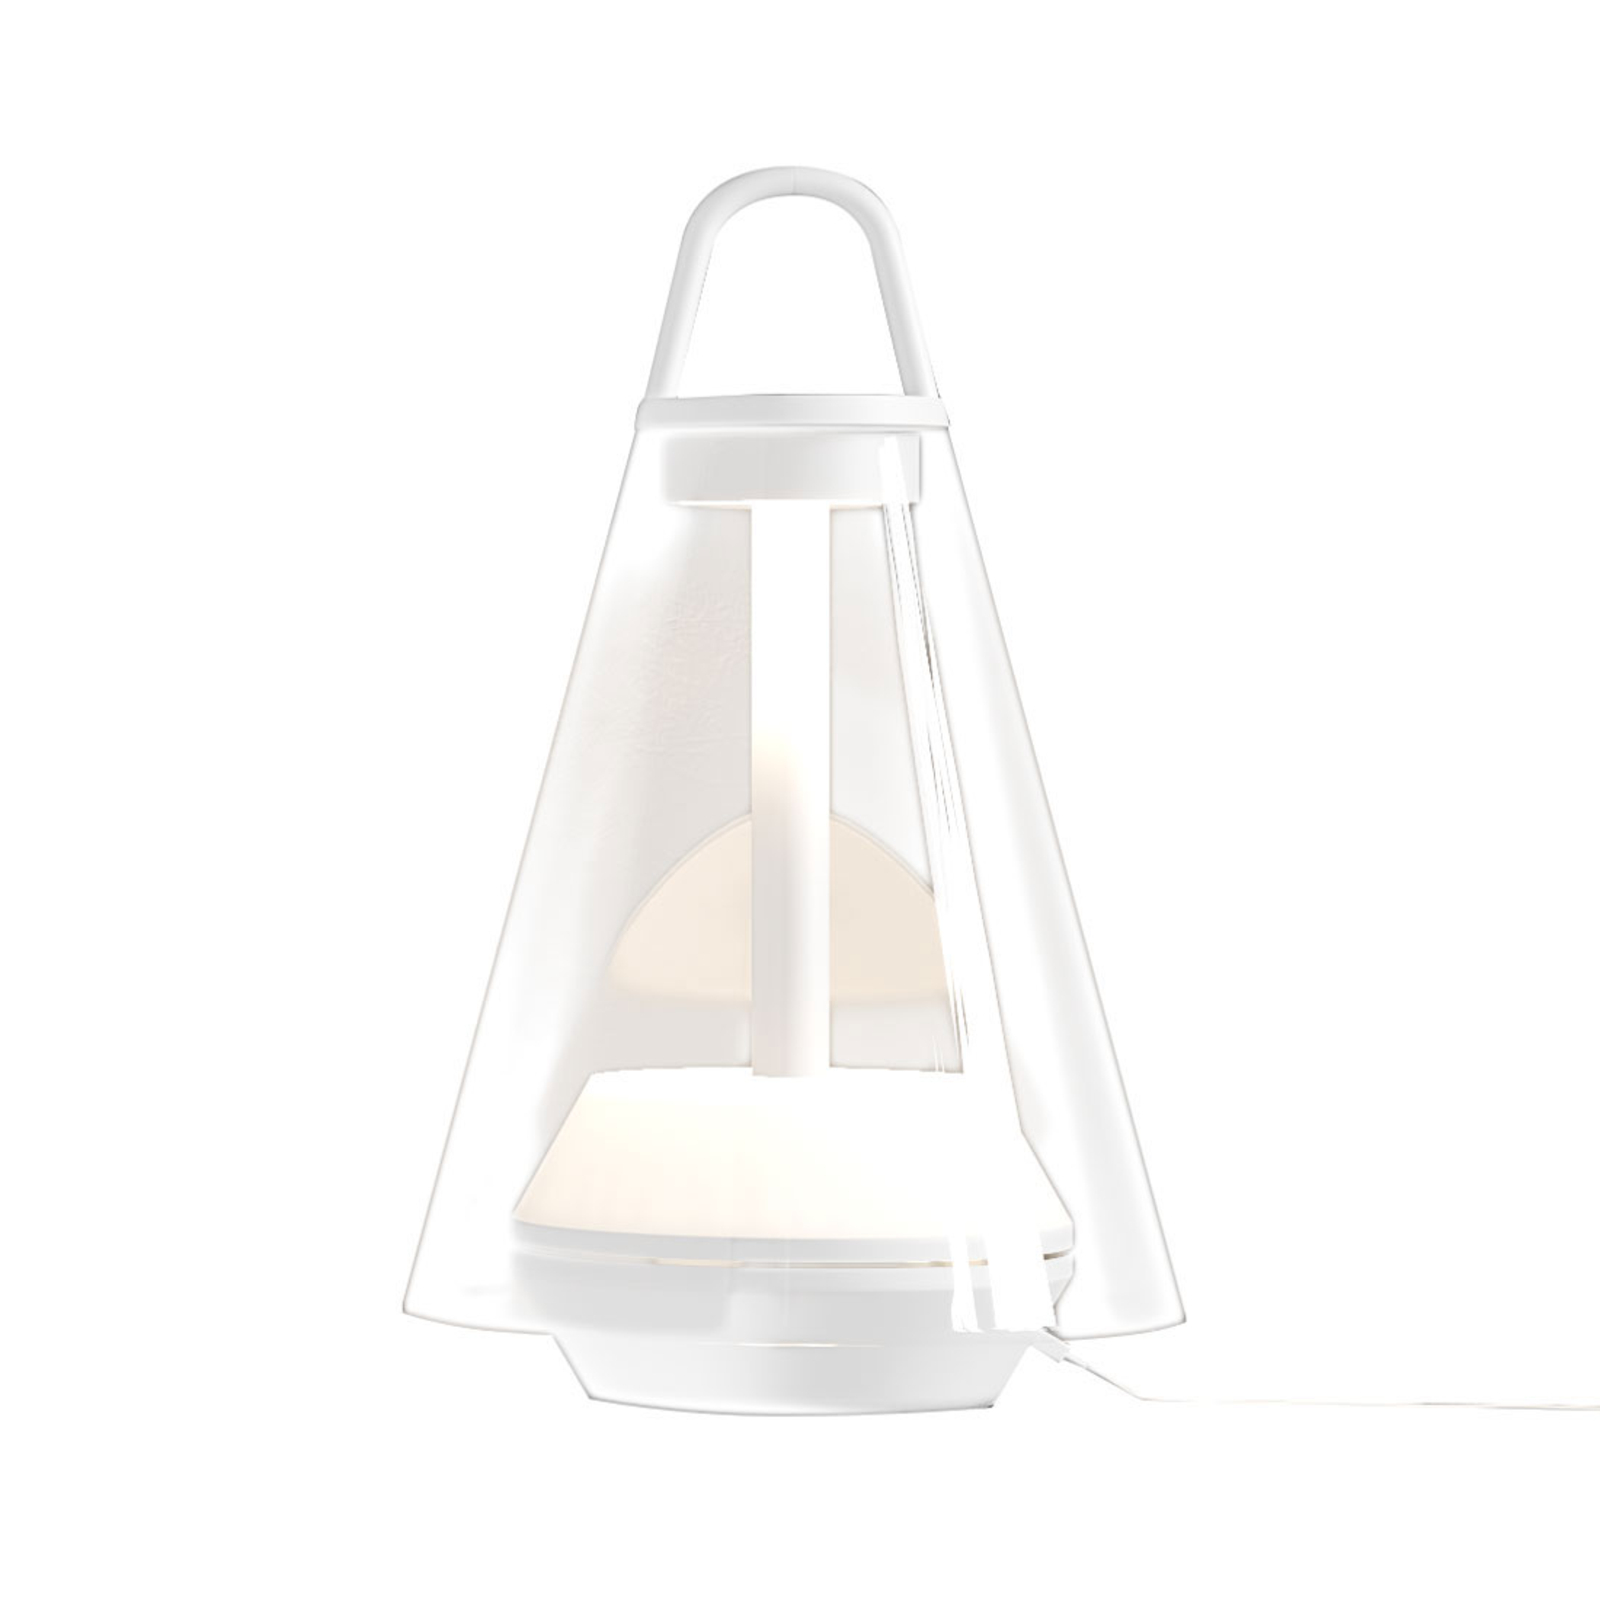 Prandina Shuttle lampe à poser blanche verre clair